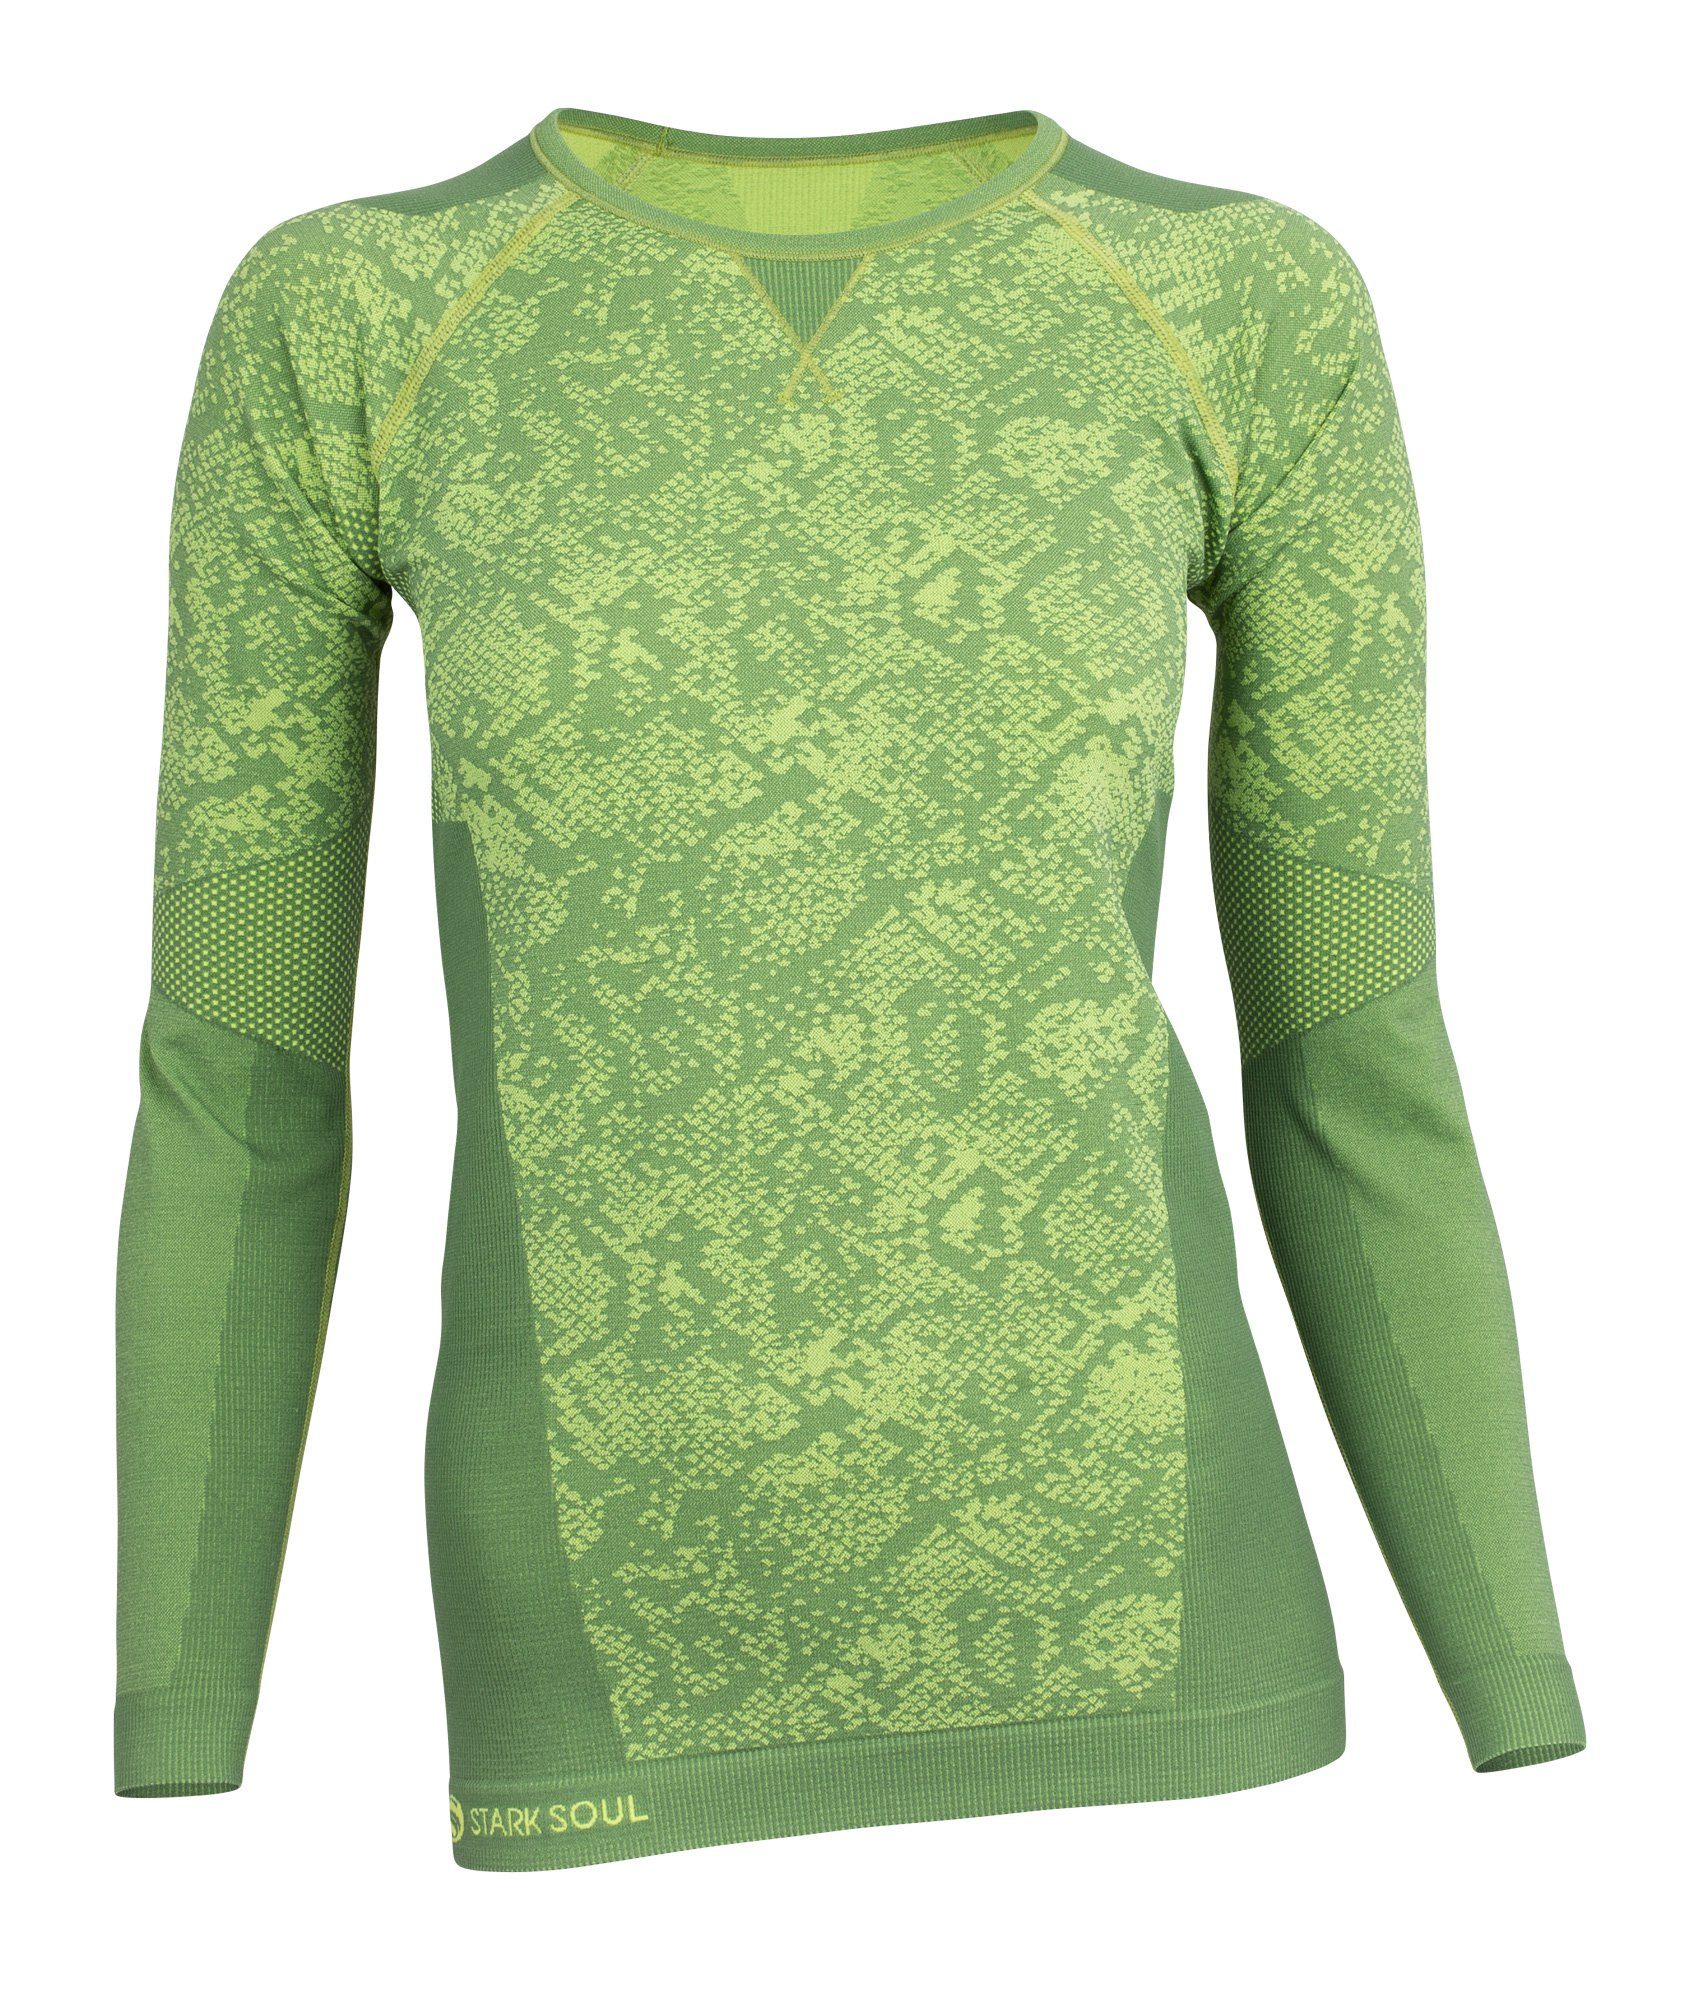 Thermounterhemd grün Funktionsshirt Long Seamless Stark Soul® Sleeve - Langarm Damen Funktionsshirt -